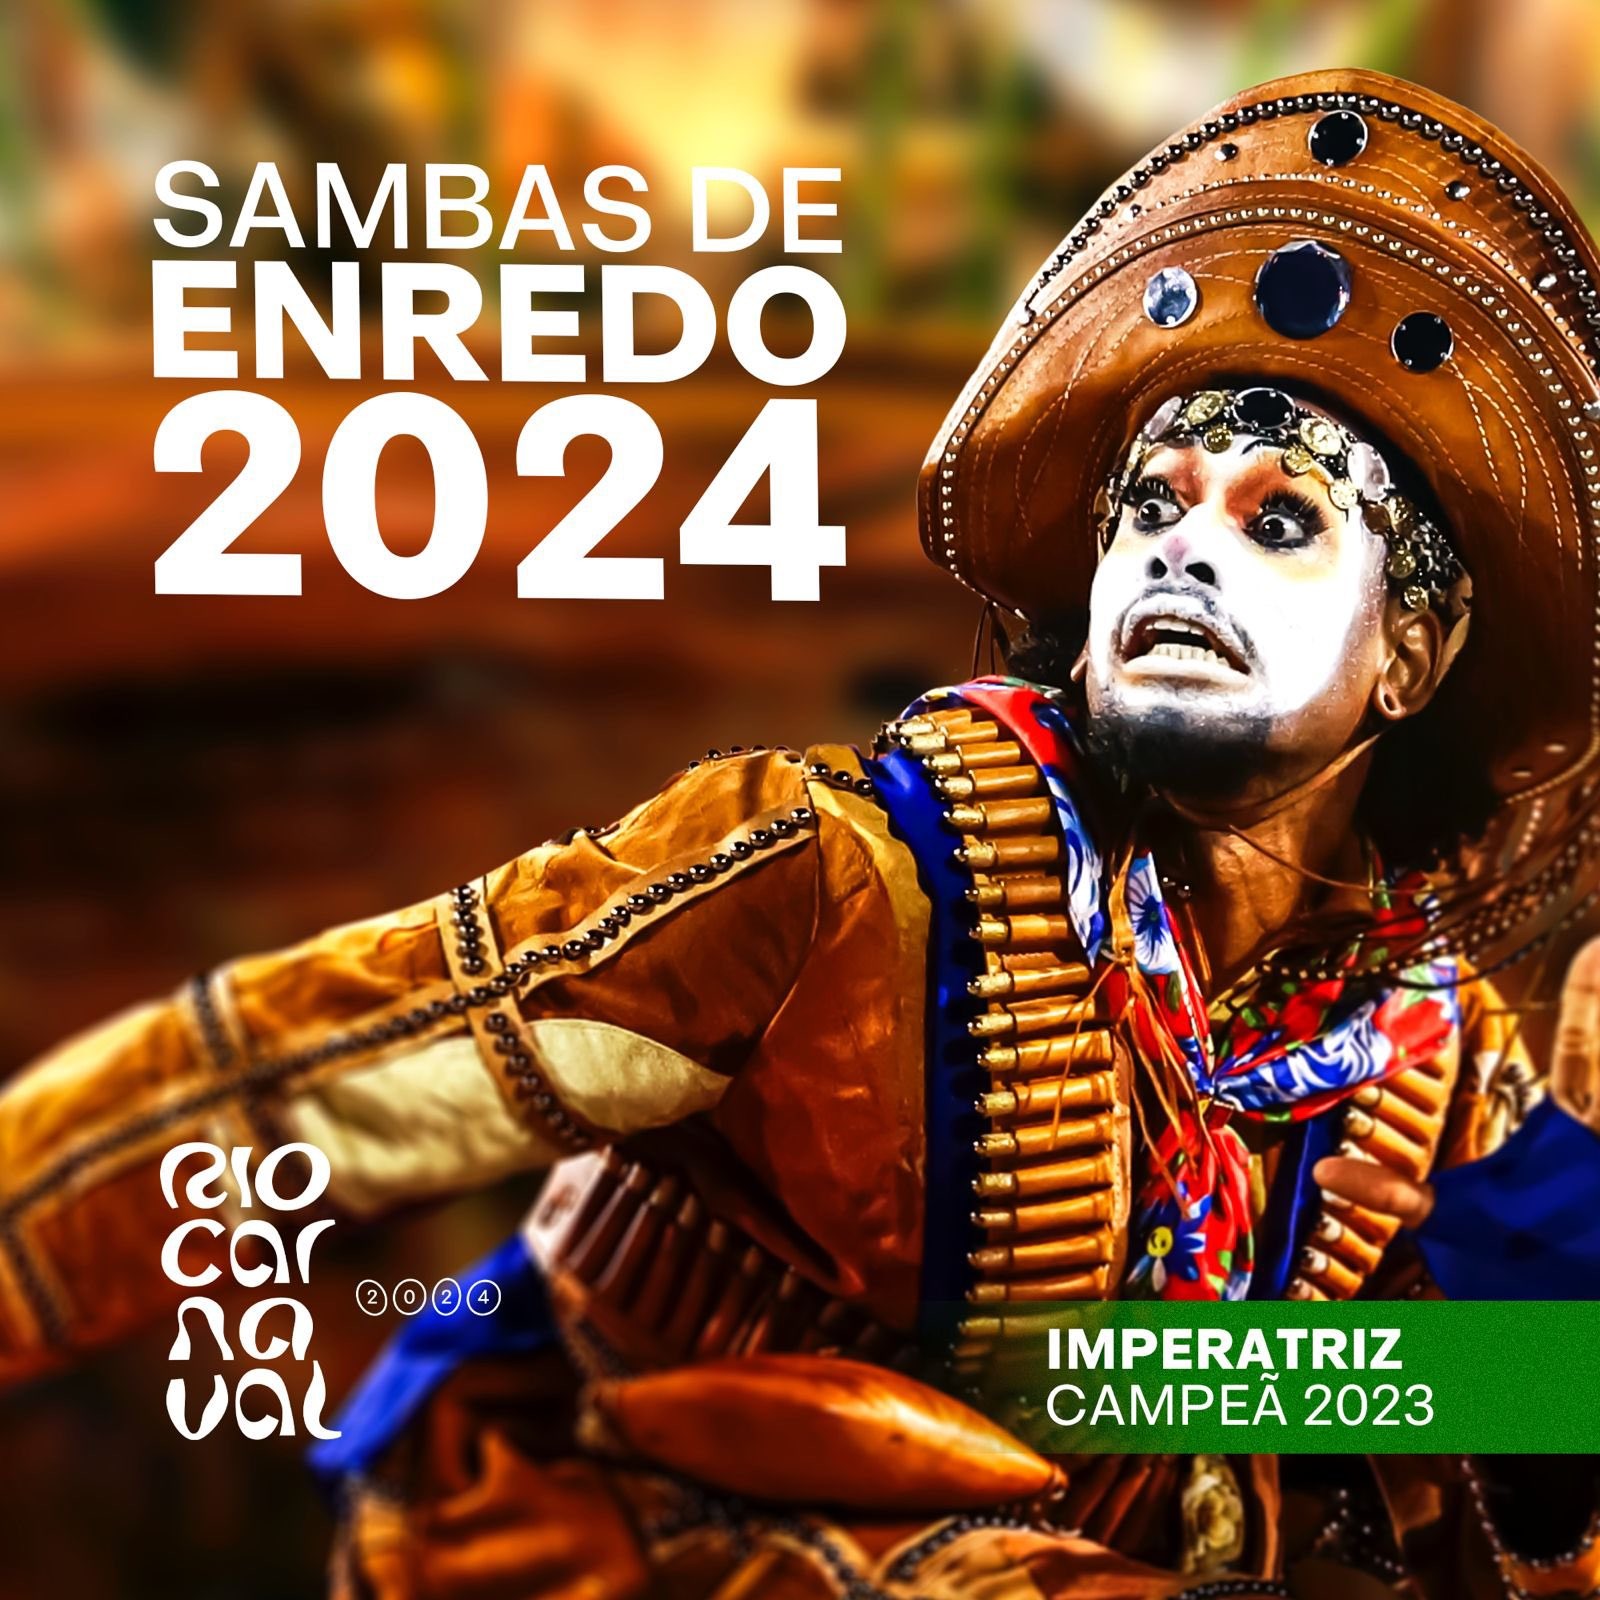 Discos com sambas de enredo do Carnaval 2024 abrem alas em dezembro para a folia carioca